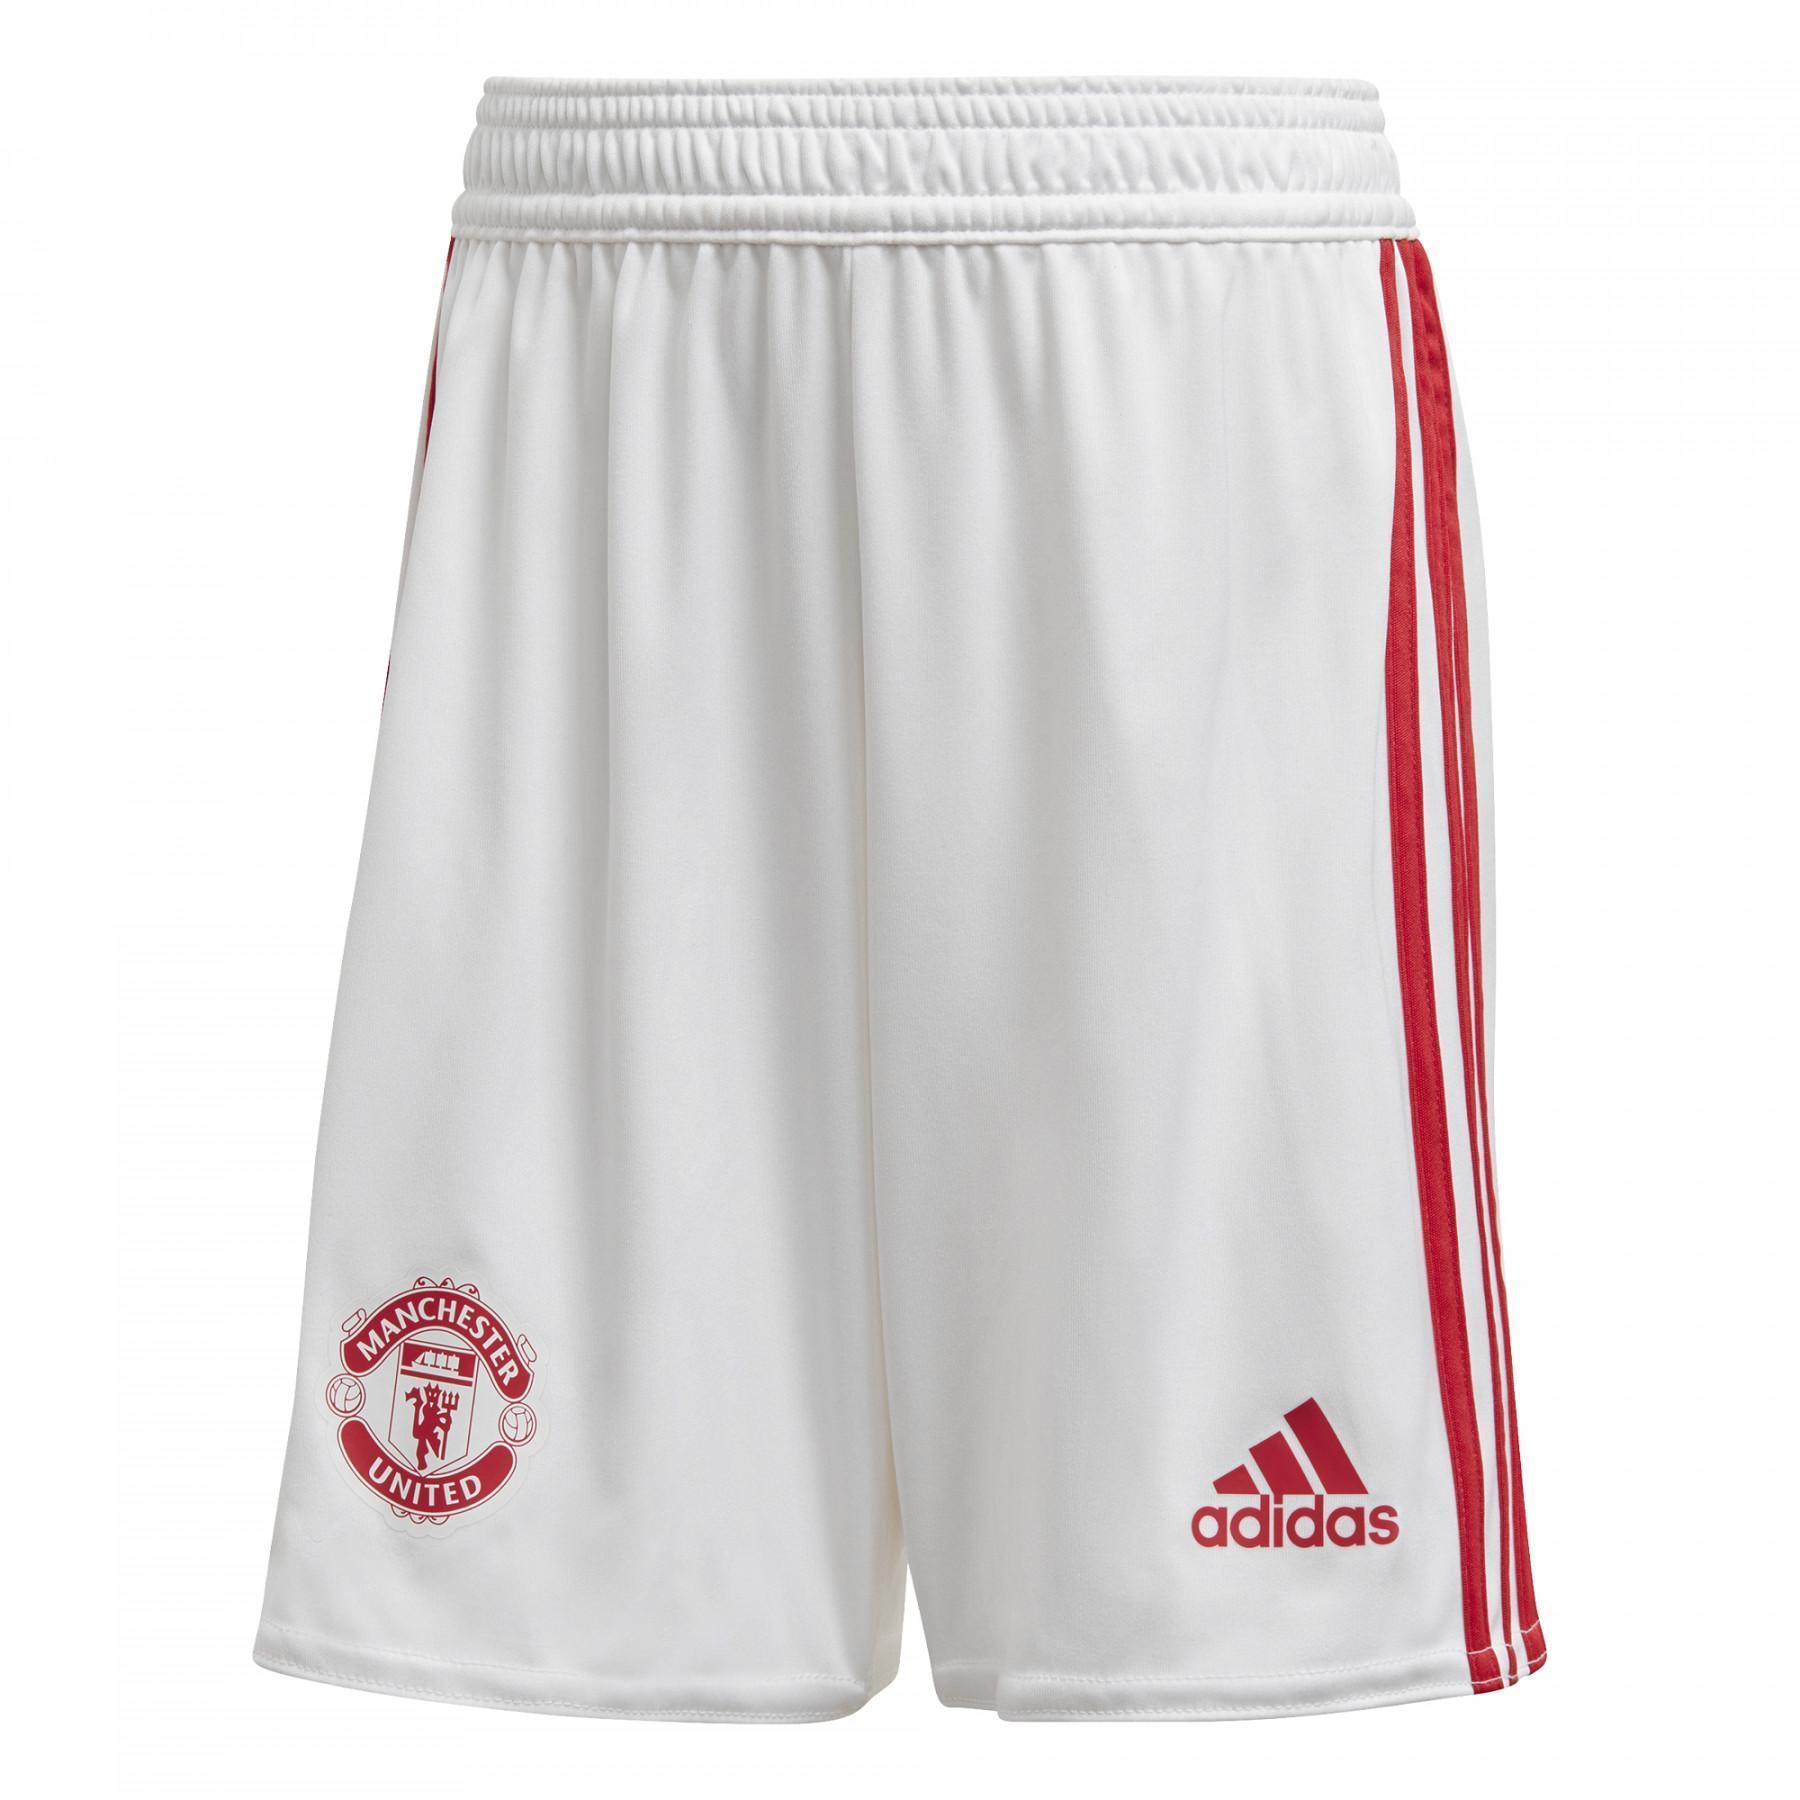 Mini-kit third Manchester United 2020/21